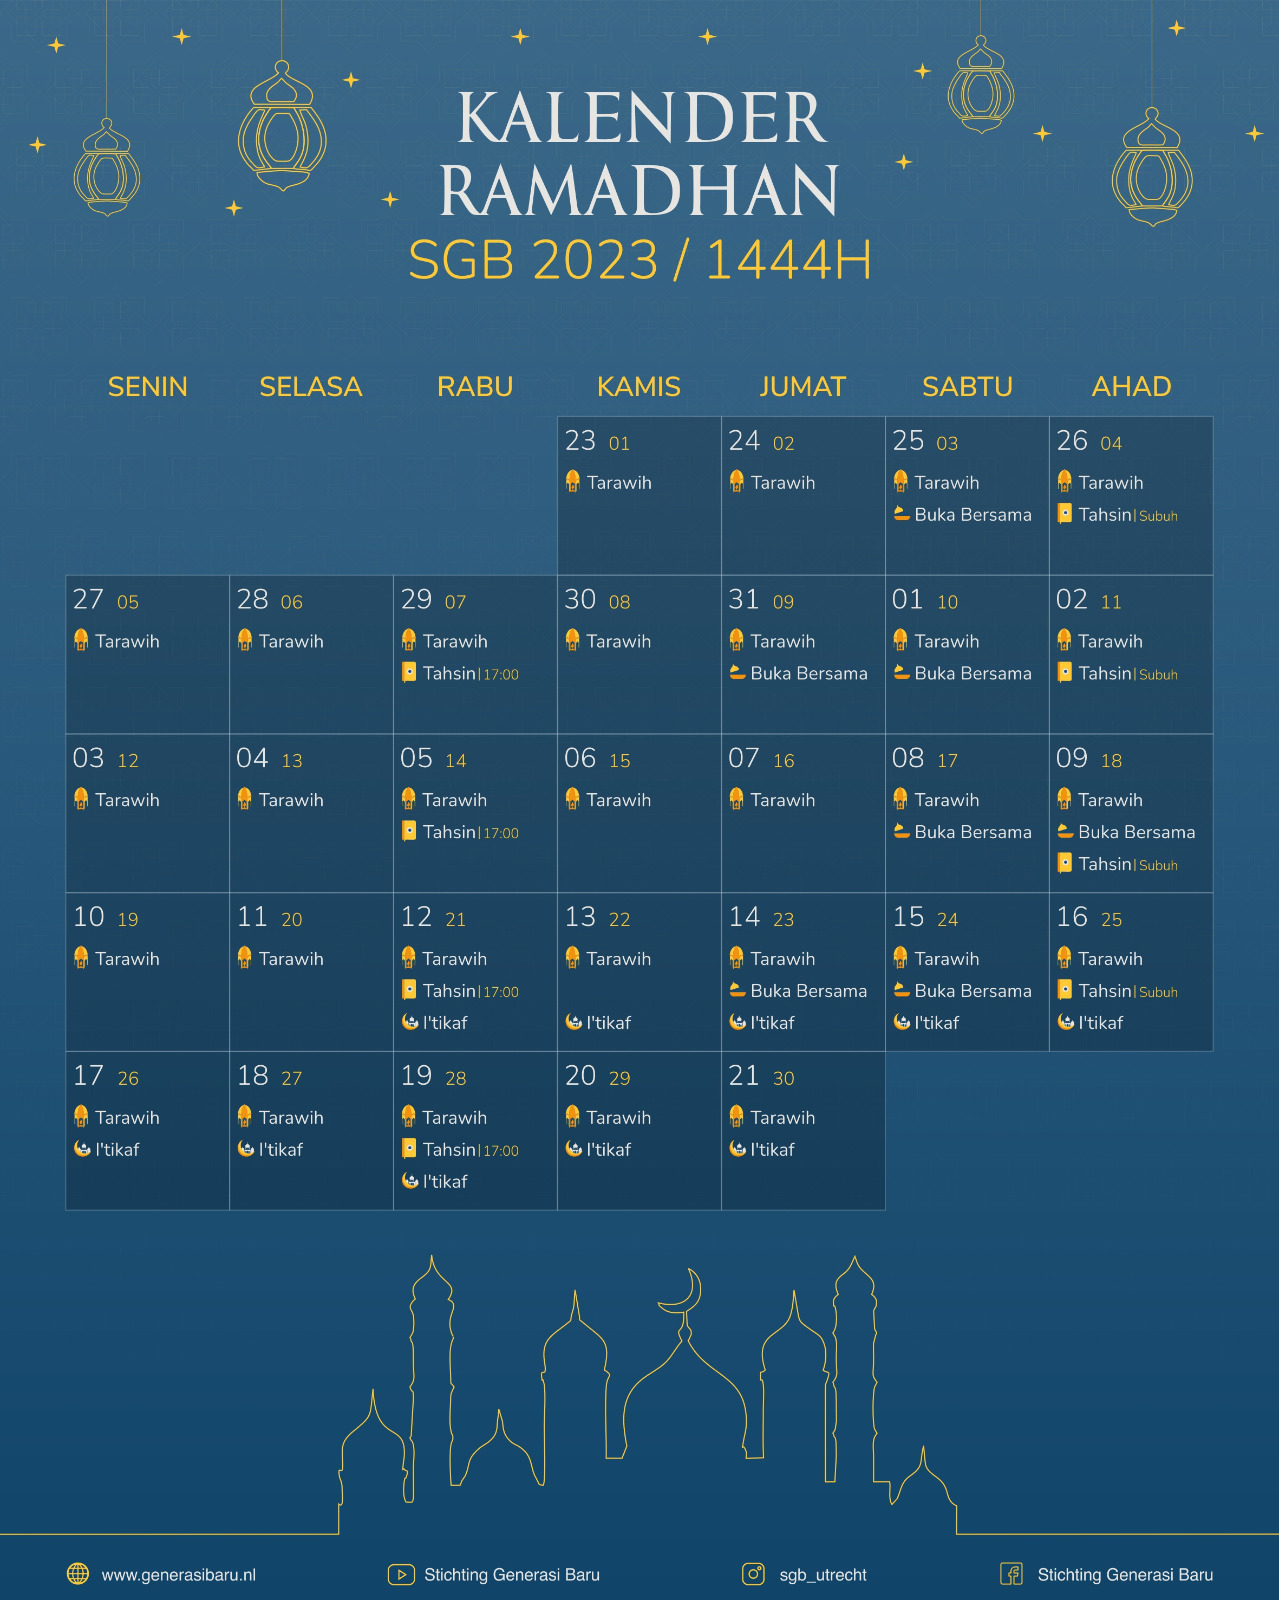 Kalender Ramadhan 2023 / 1444H